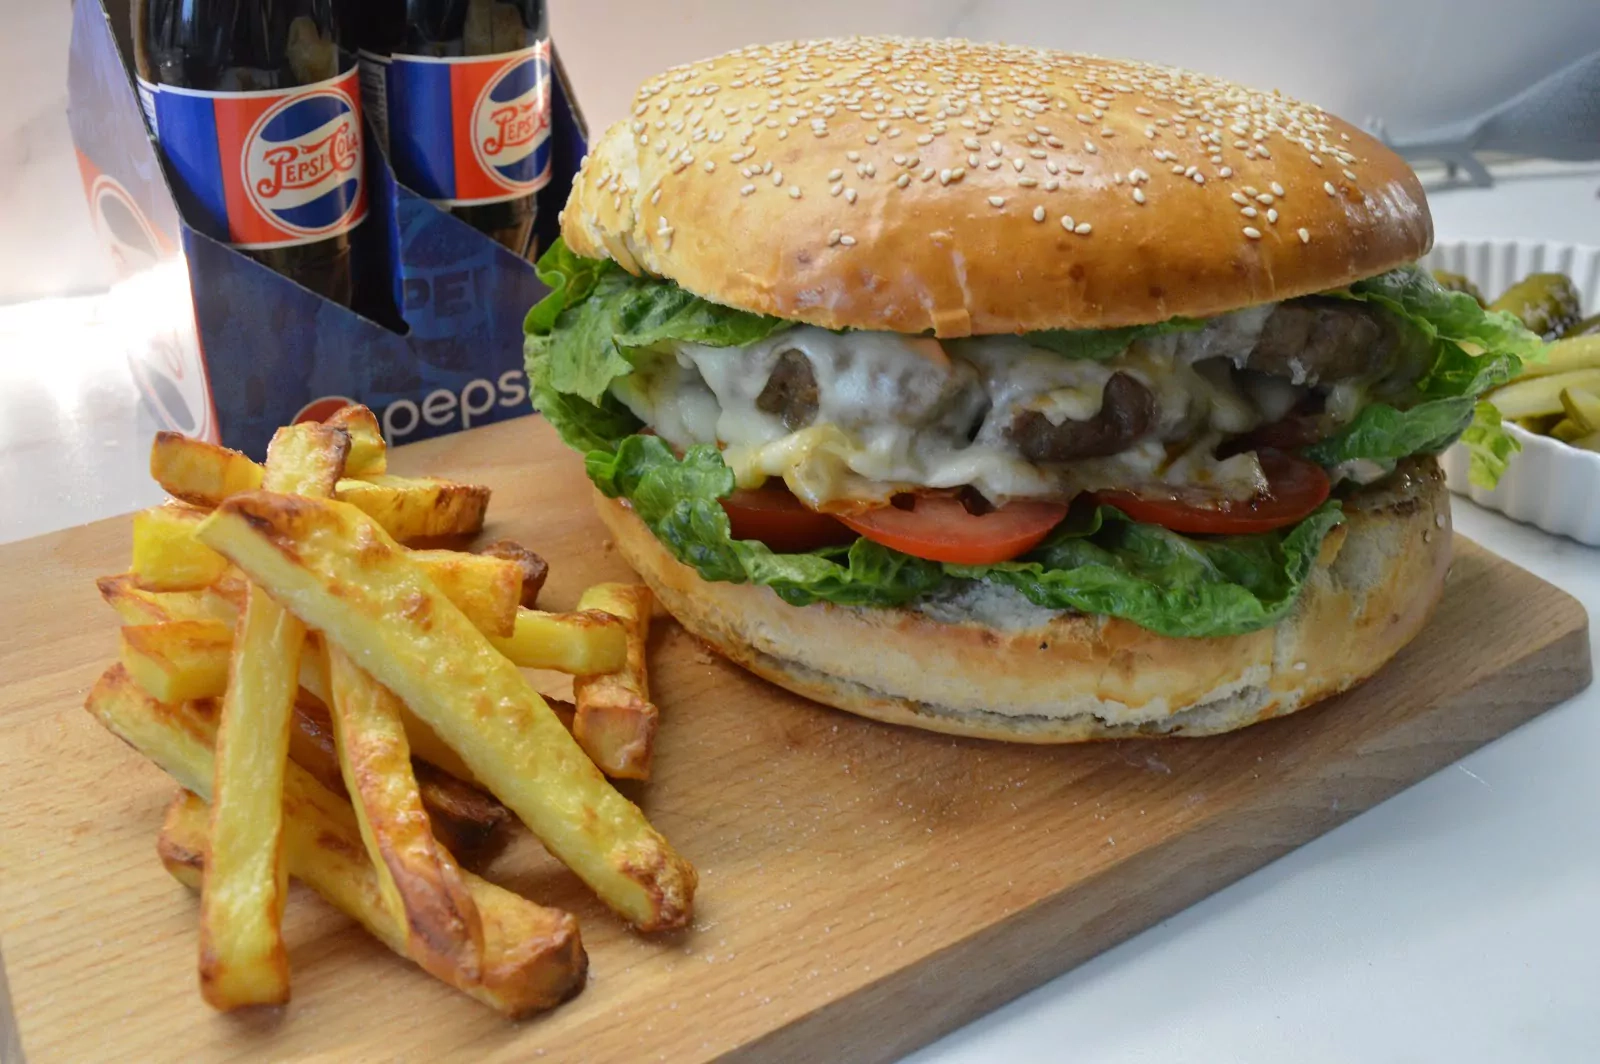 Mega burger z wołowiną - jeżeli robicie w domu, to tyłku tak!